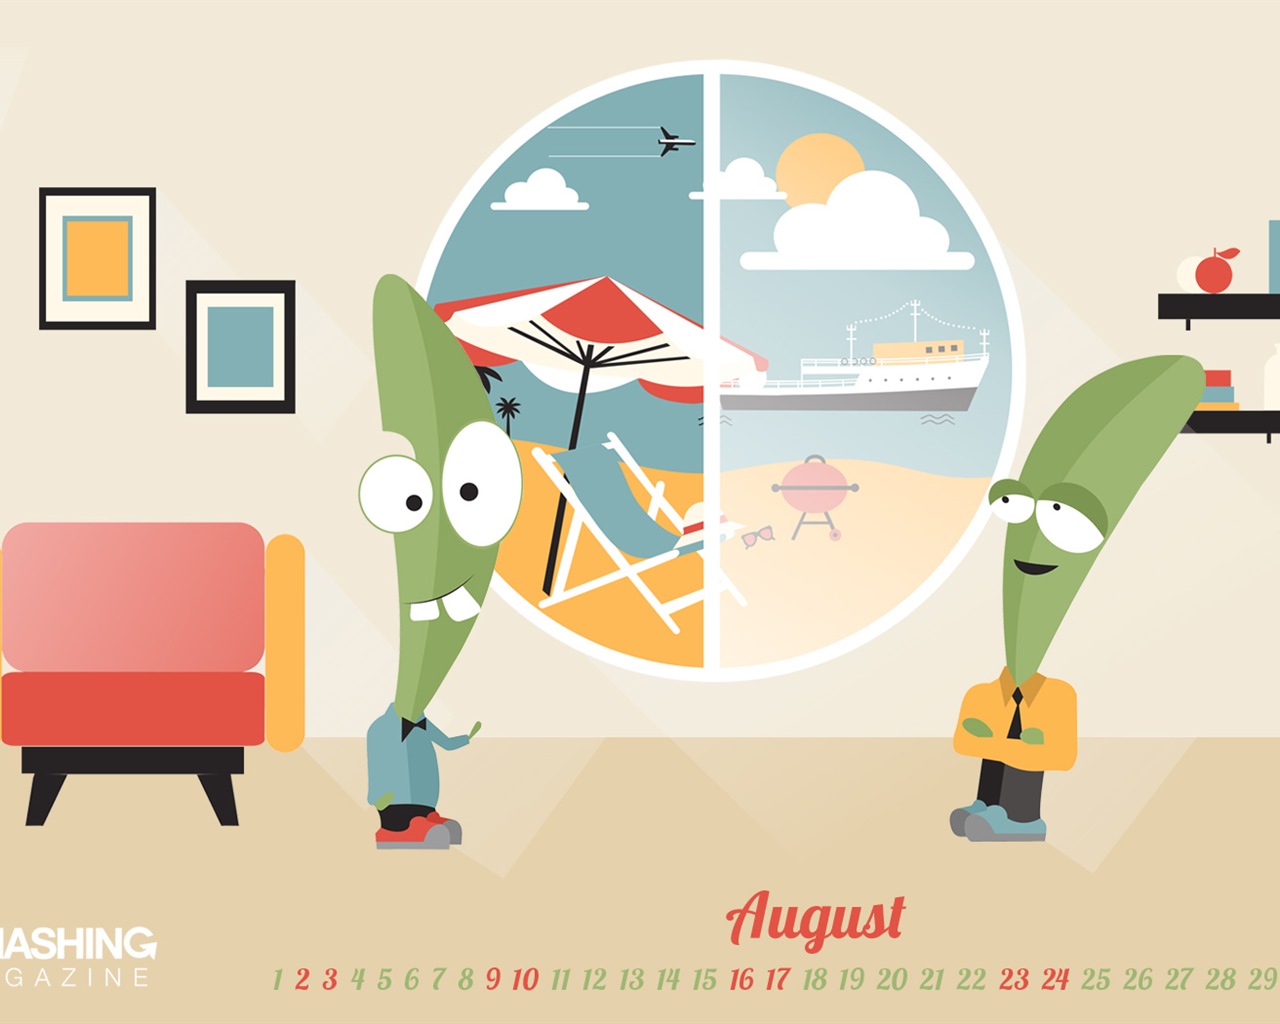 August 2014 calendar wallpaper (2) #6 - 1280x1024